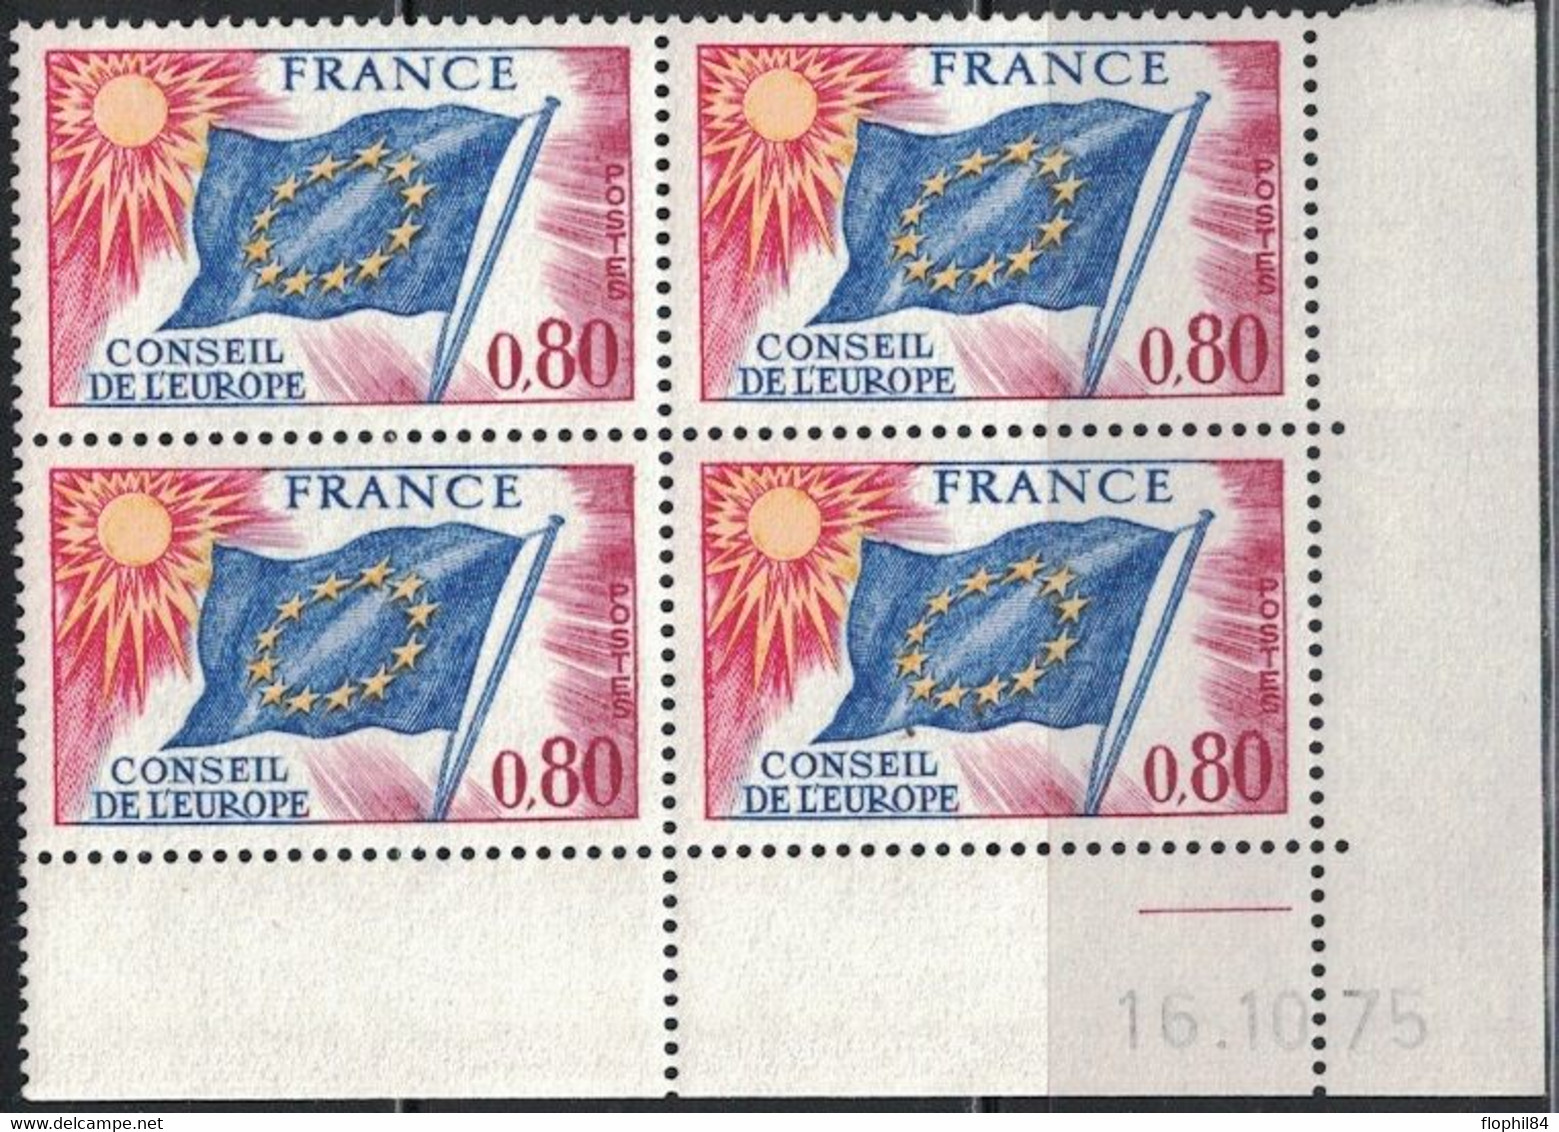 COIN DATE - SERVICE N°47 - 0f80 - CONSEIL DE L'EUROPE - 16-10-1975 - Cote 10€. - Service